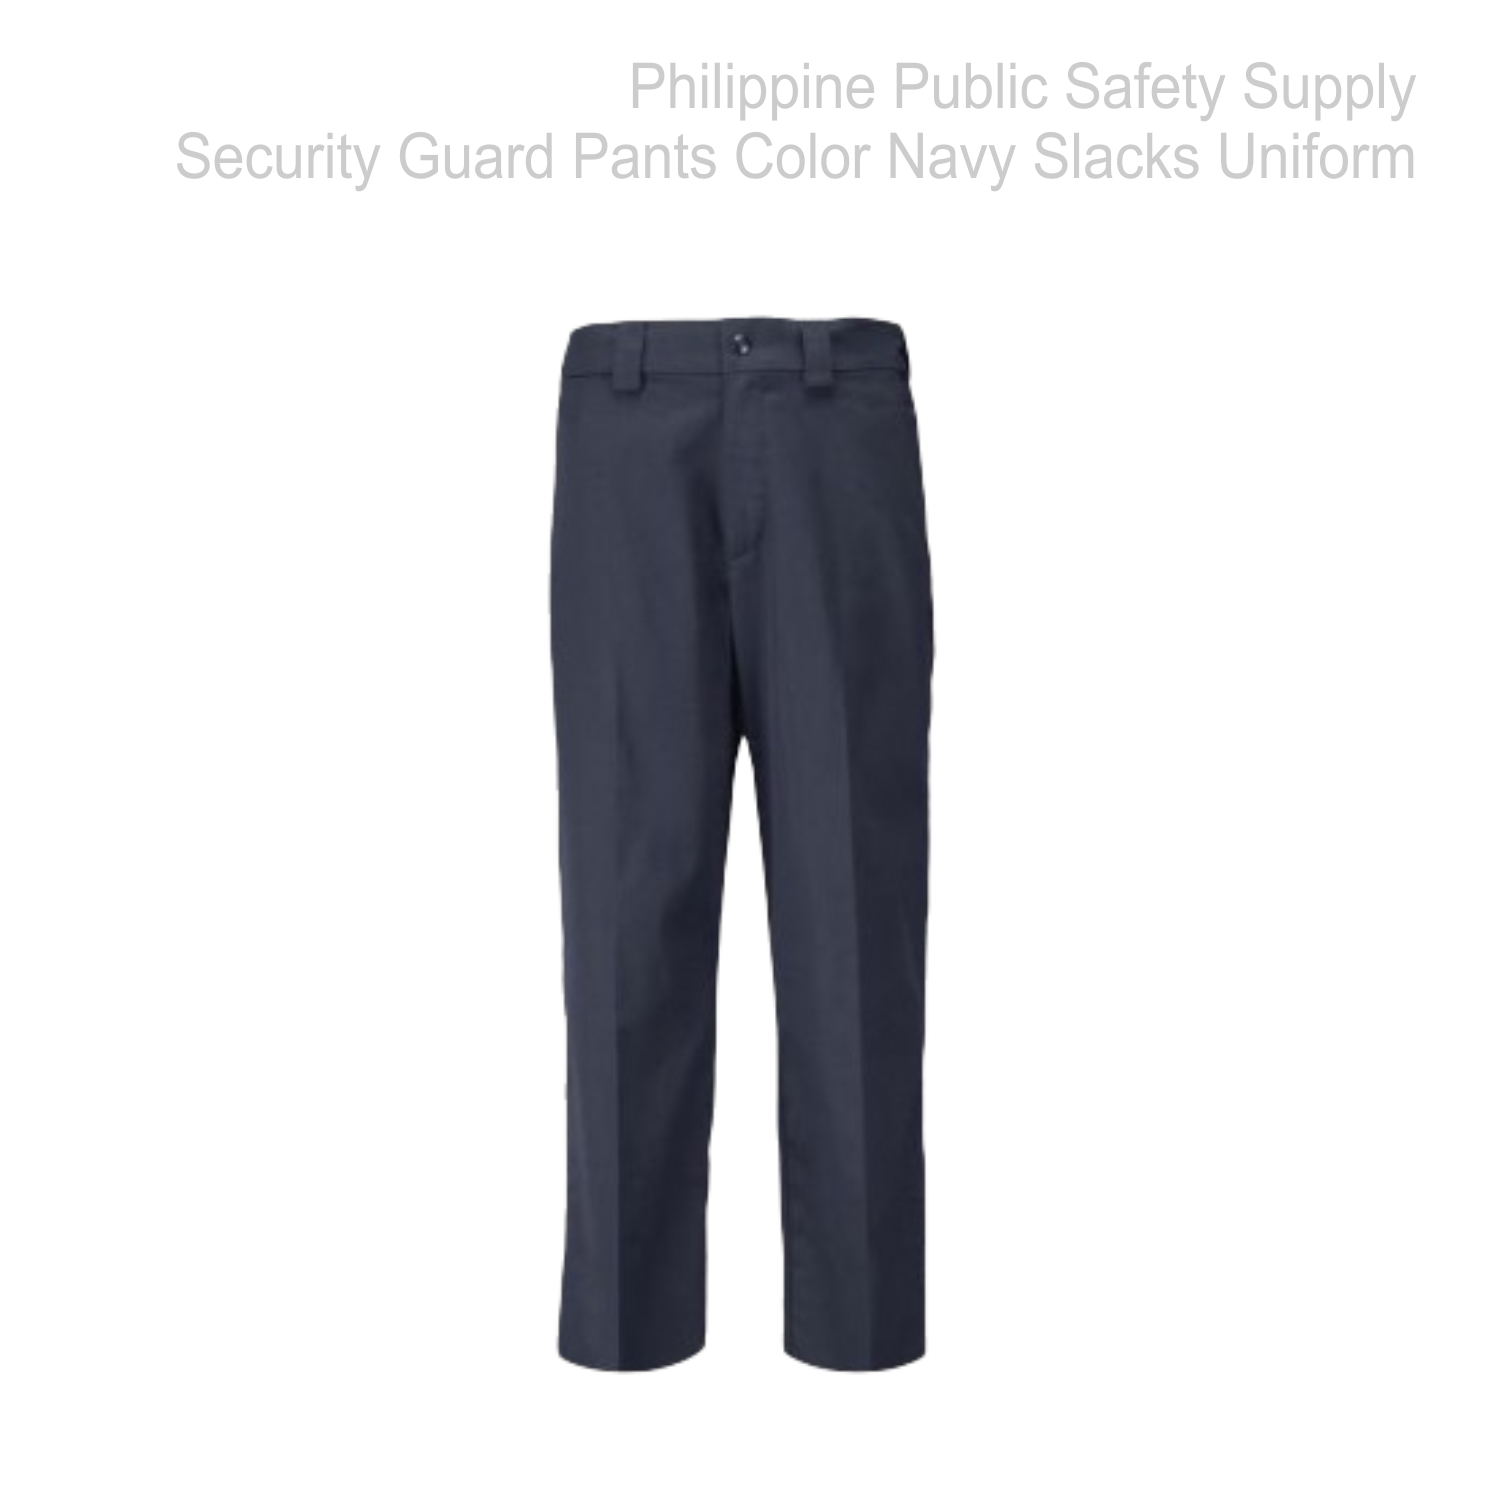 Security Guard Pants Color Navy Blue Slacks Uniform - PSA-SG